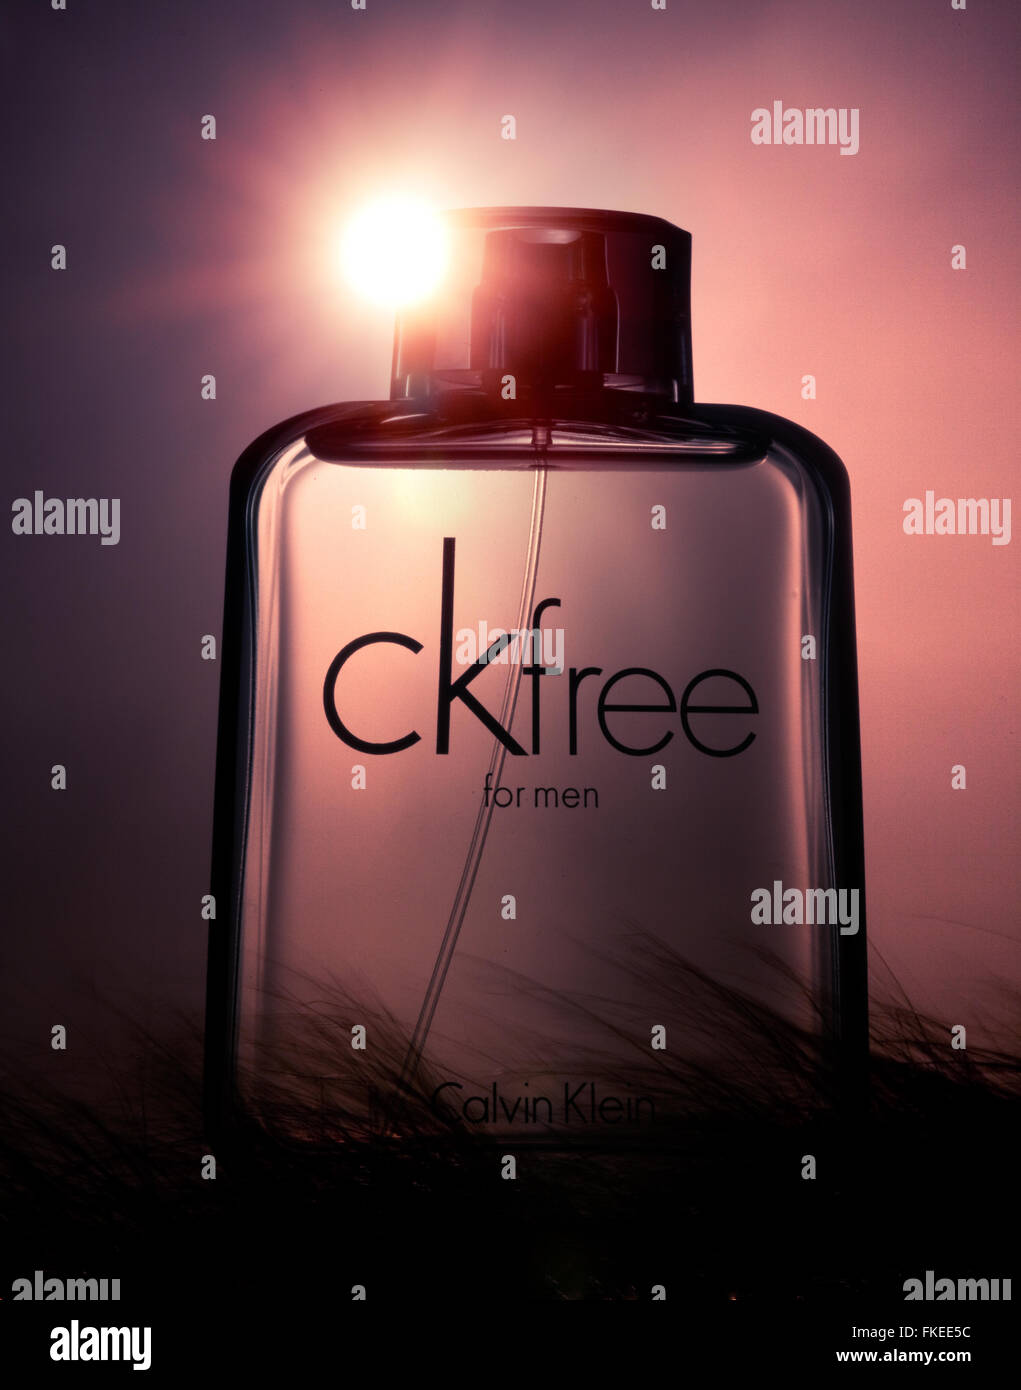 Conceptual image of Calvin Klein CK free men's fragrance Stock Photo - Alamy